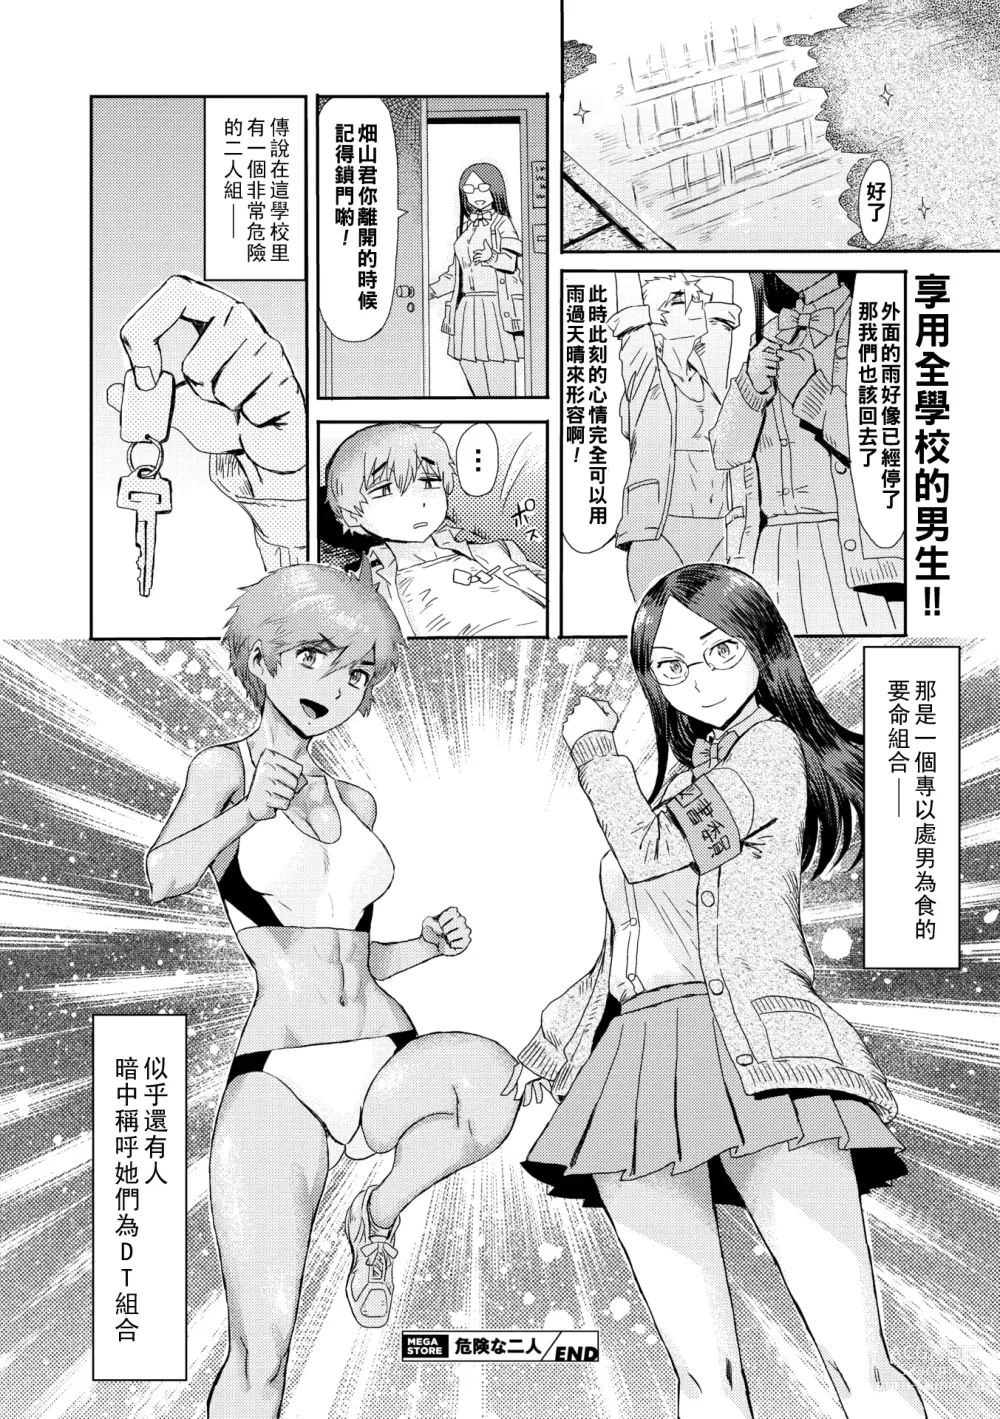 Page 24 of manga Danger Pair